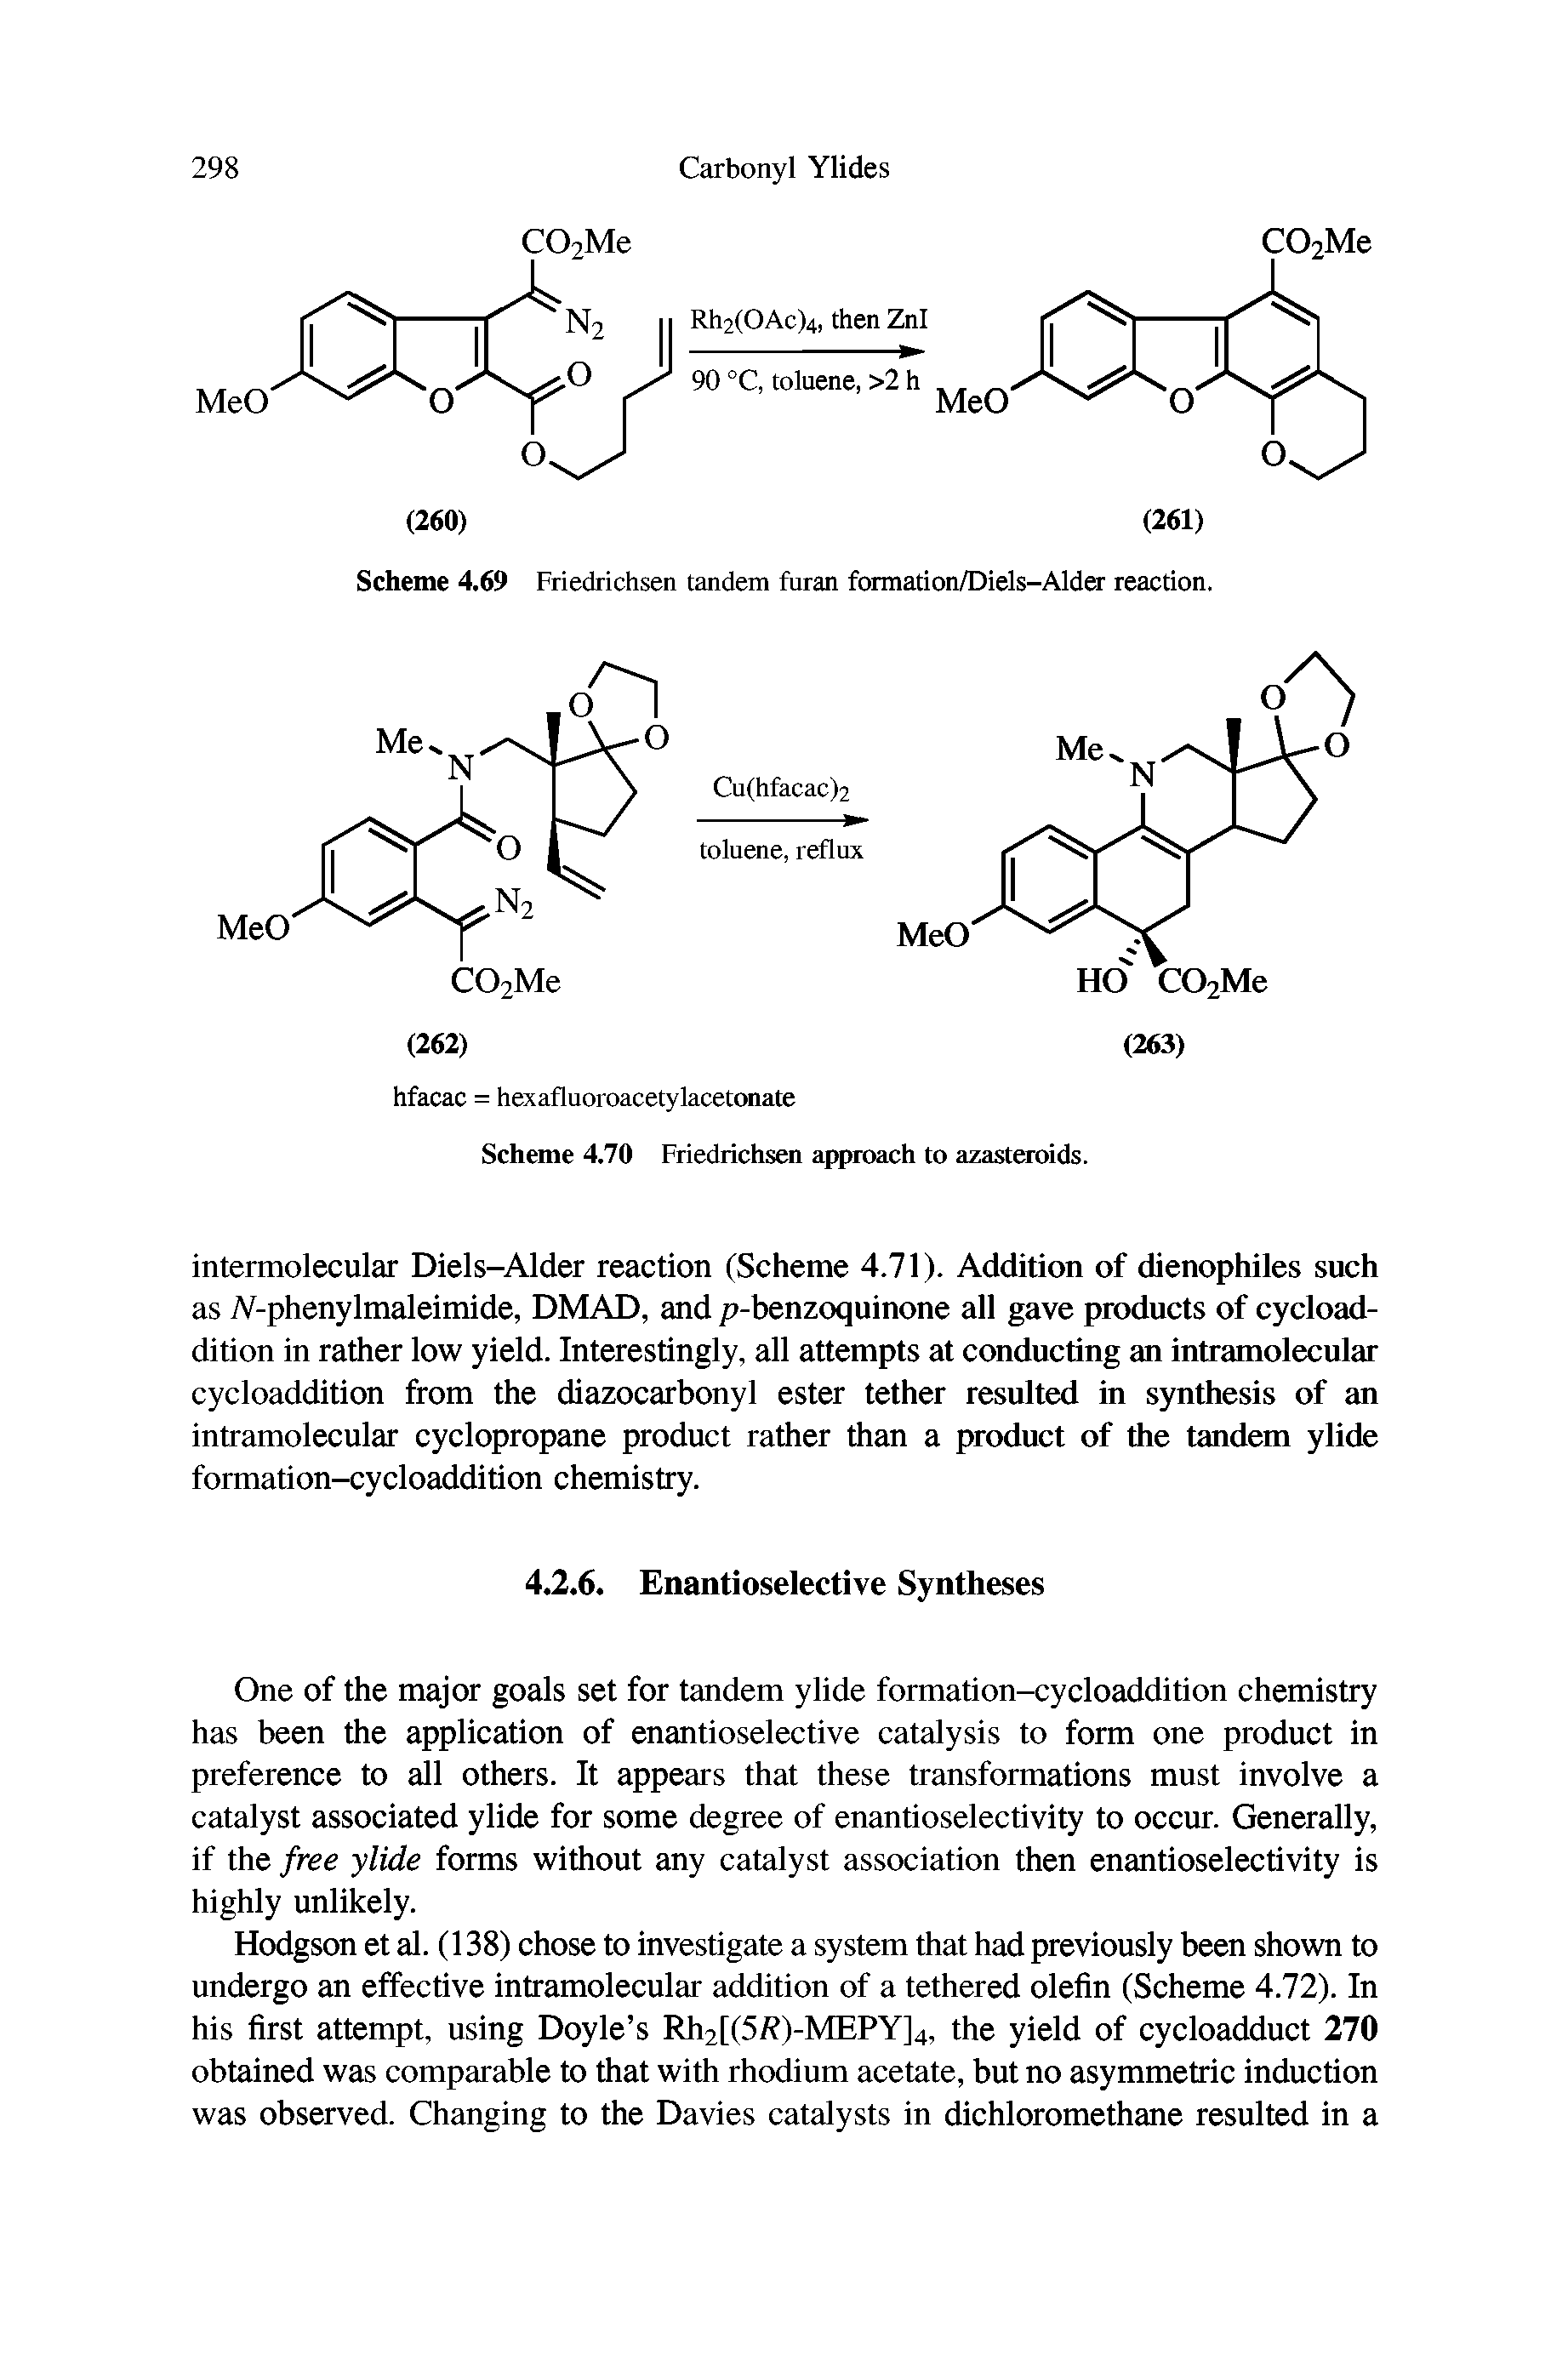 Scheme 4.69 Friedrichsen tandem furan formation/Diels-Alder reaction.